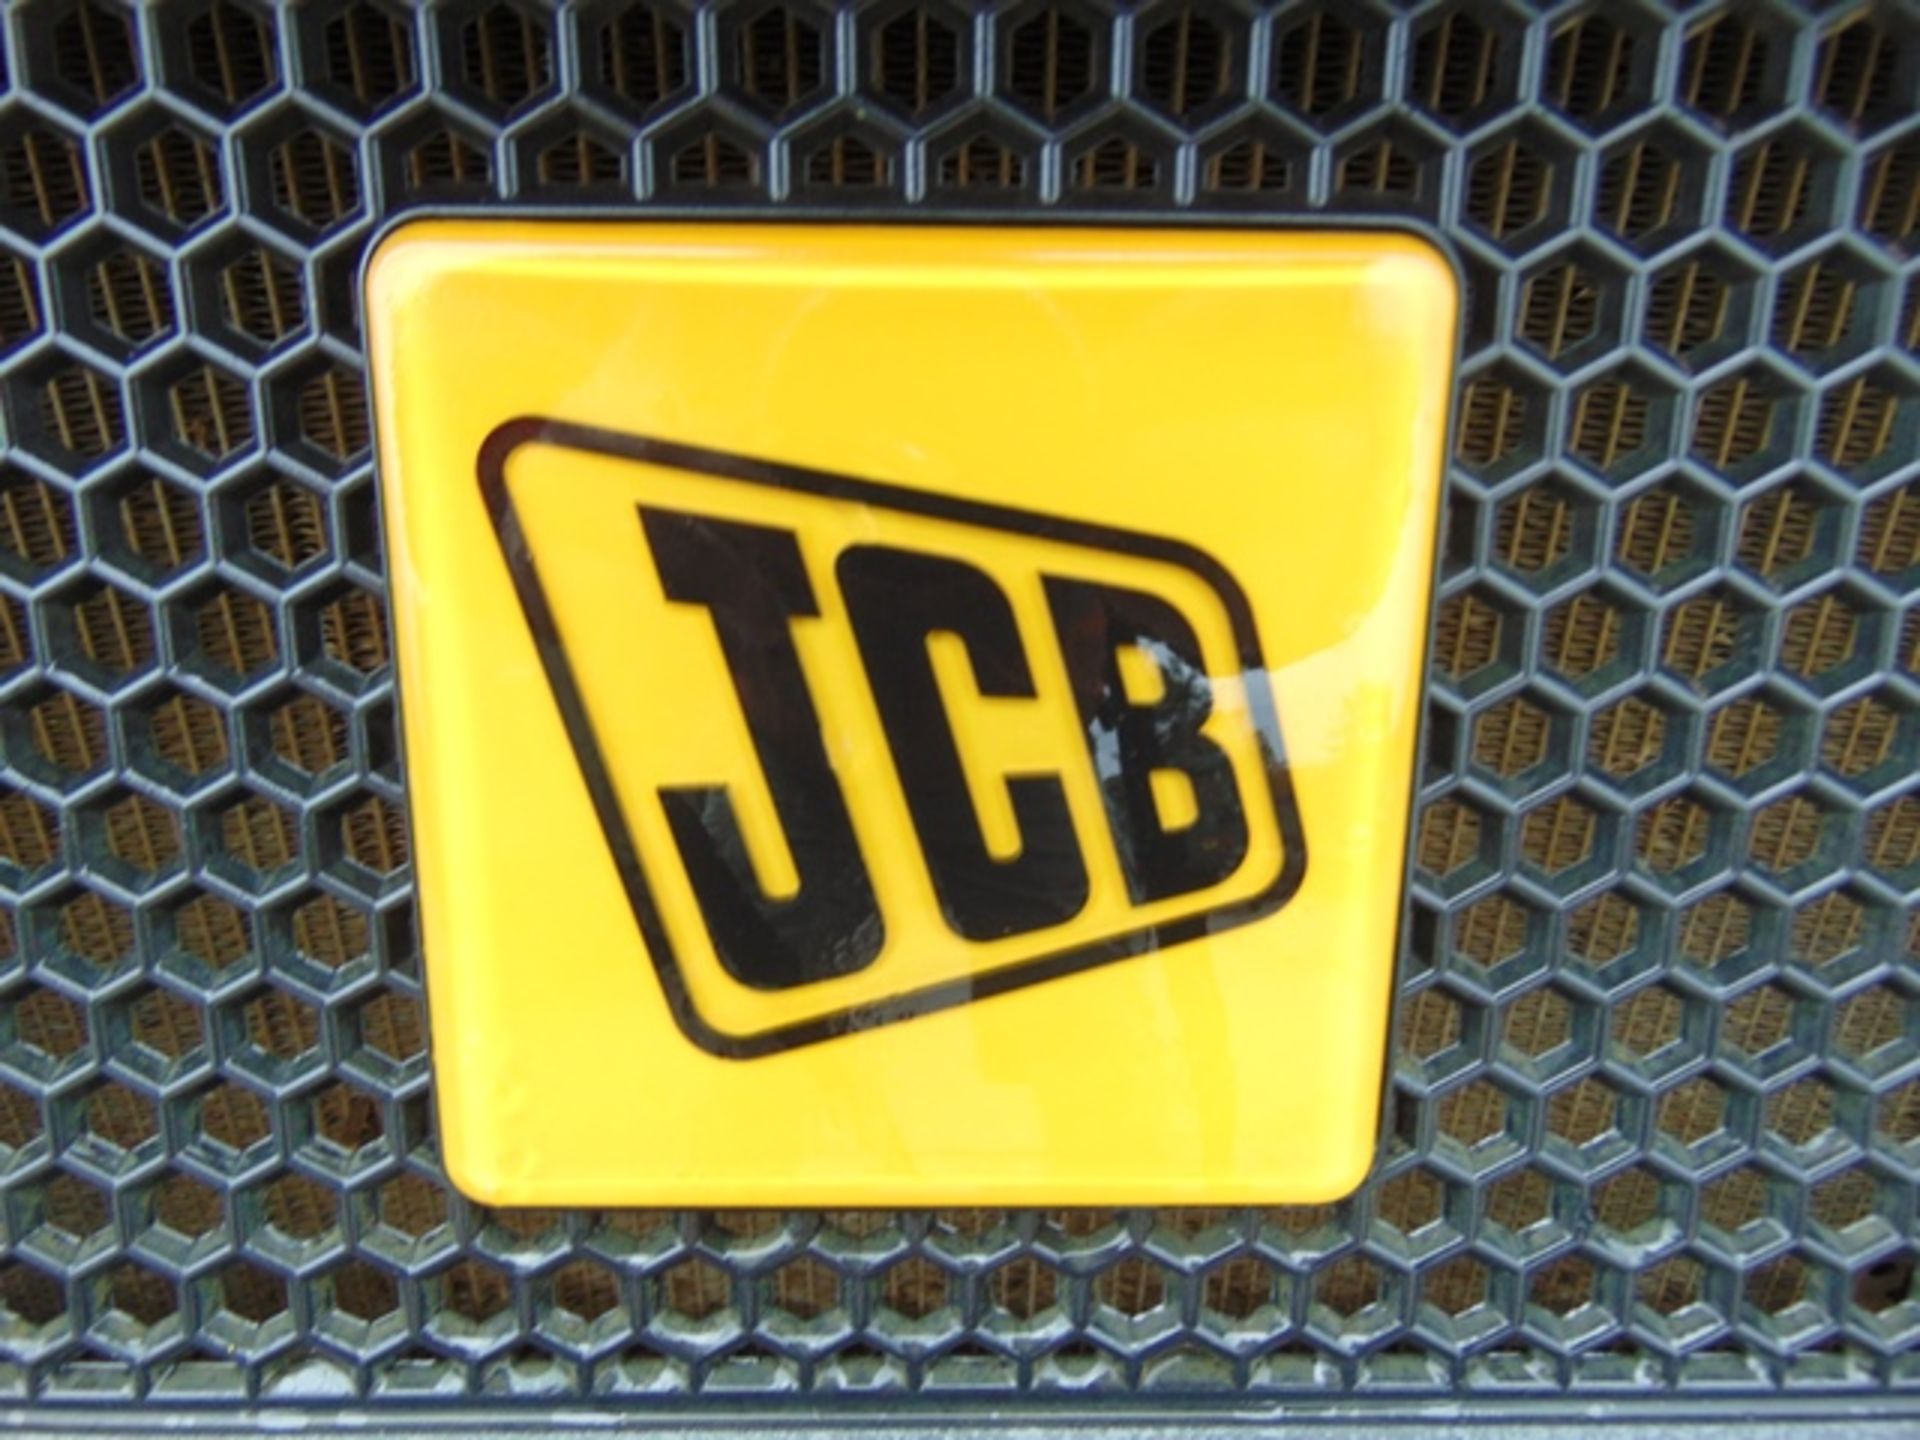 2015 JCB Workmax 4WD Diesel Utility Vehicle UTV - Bild 12 aus 18